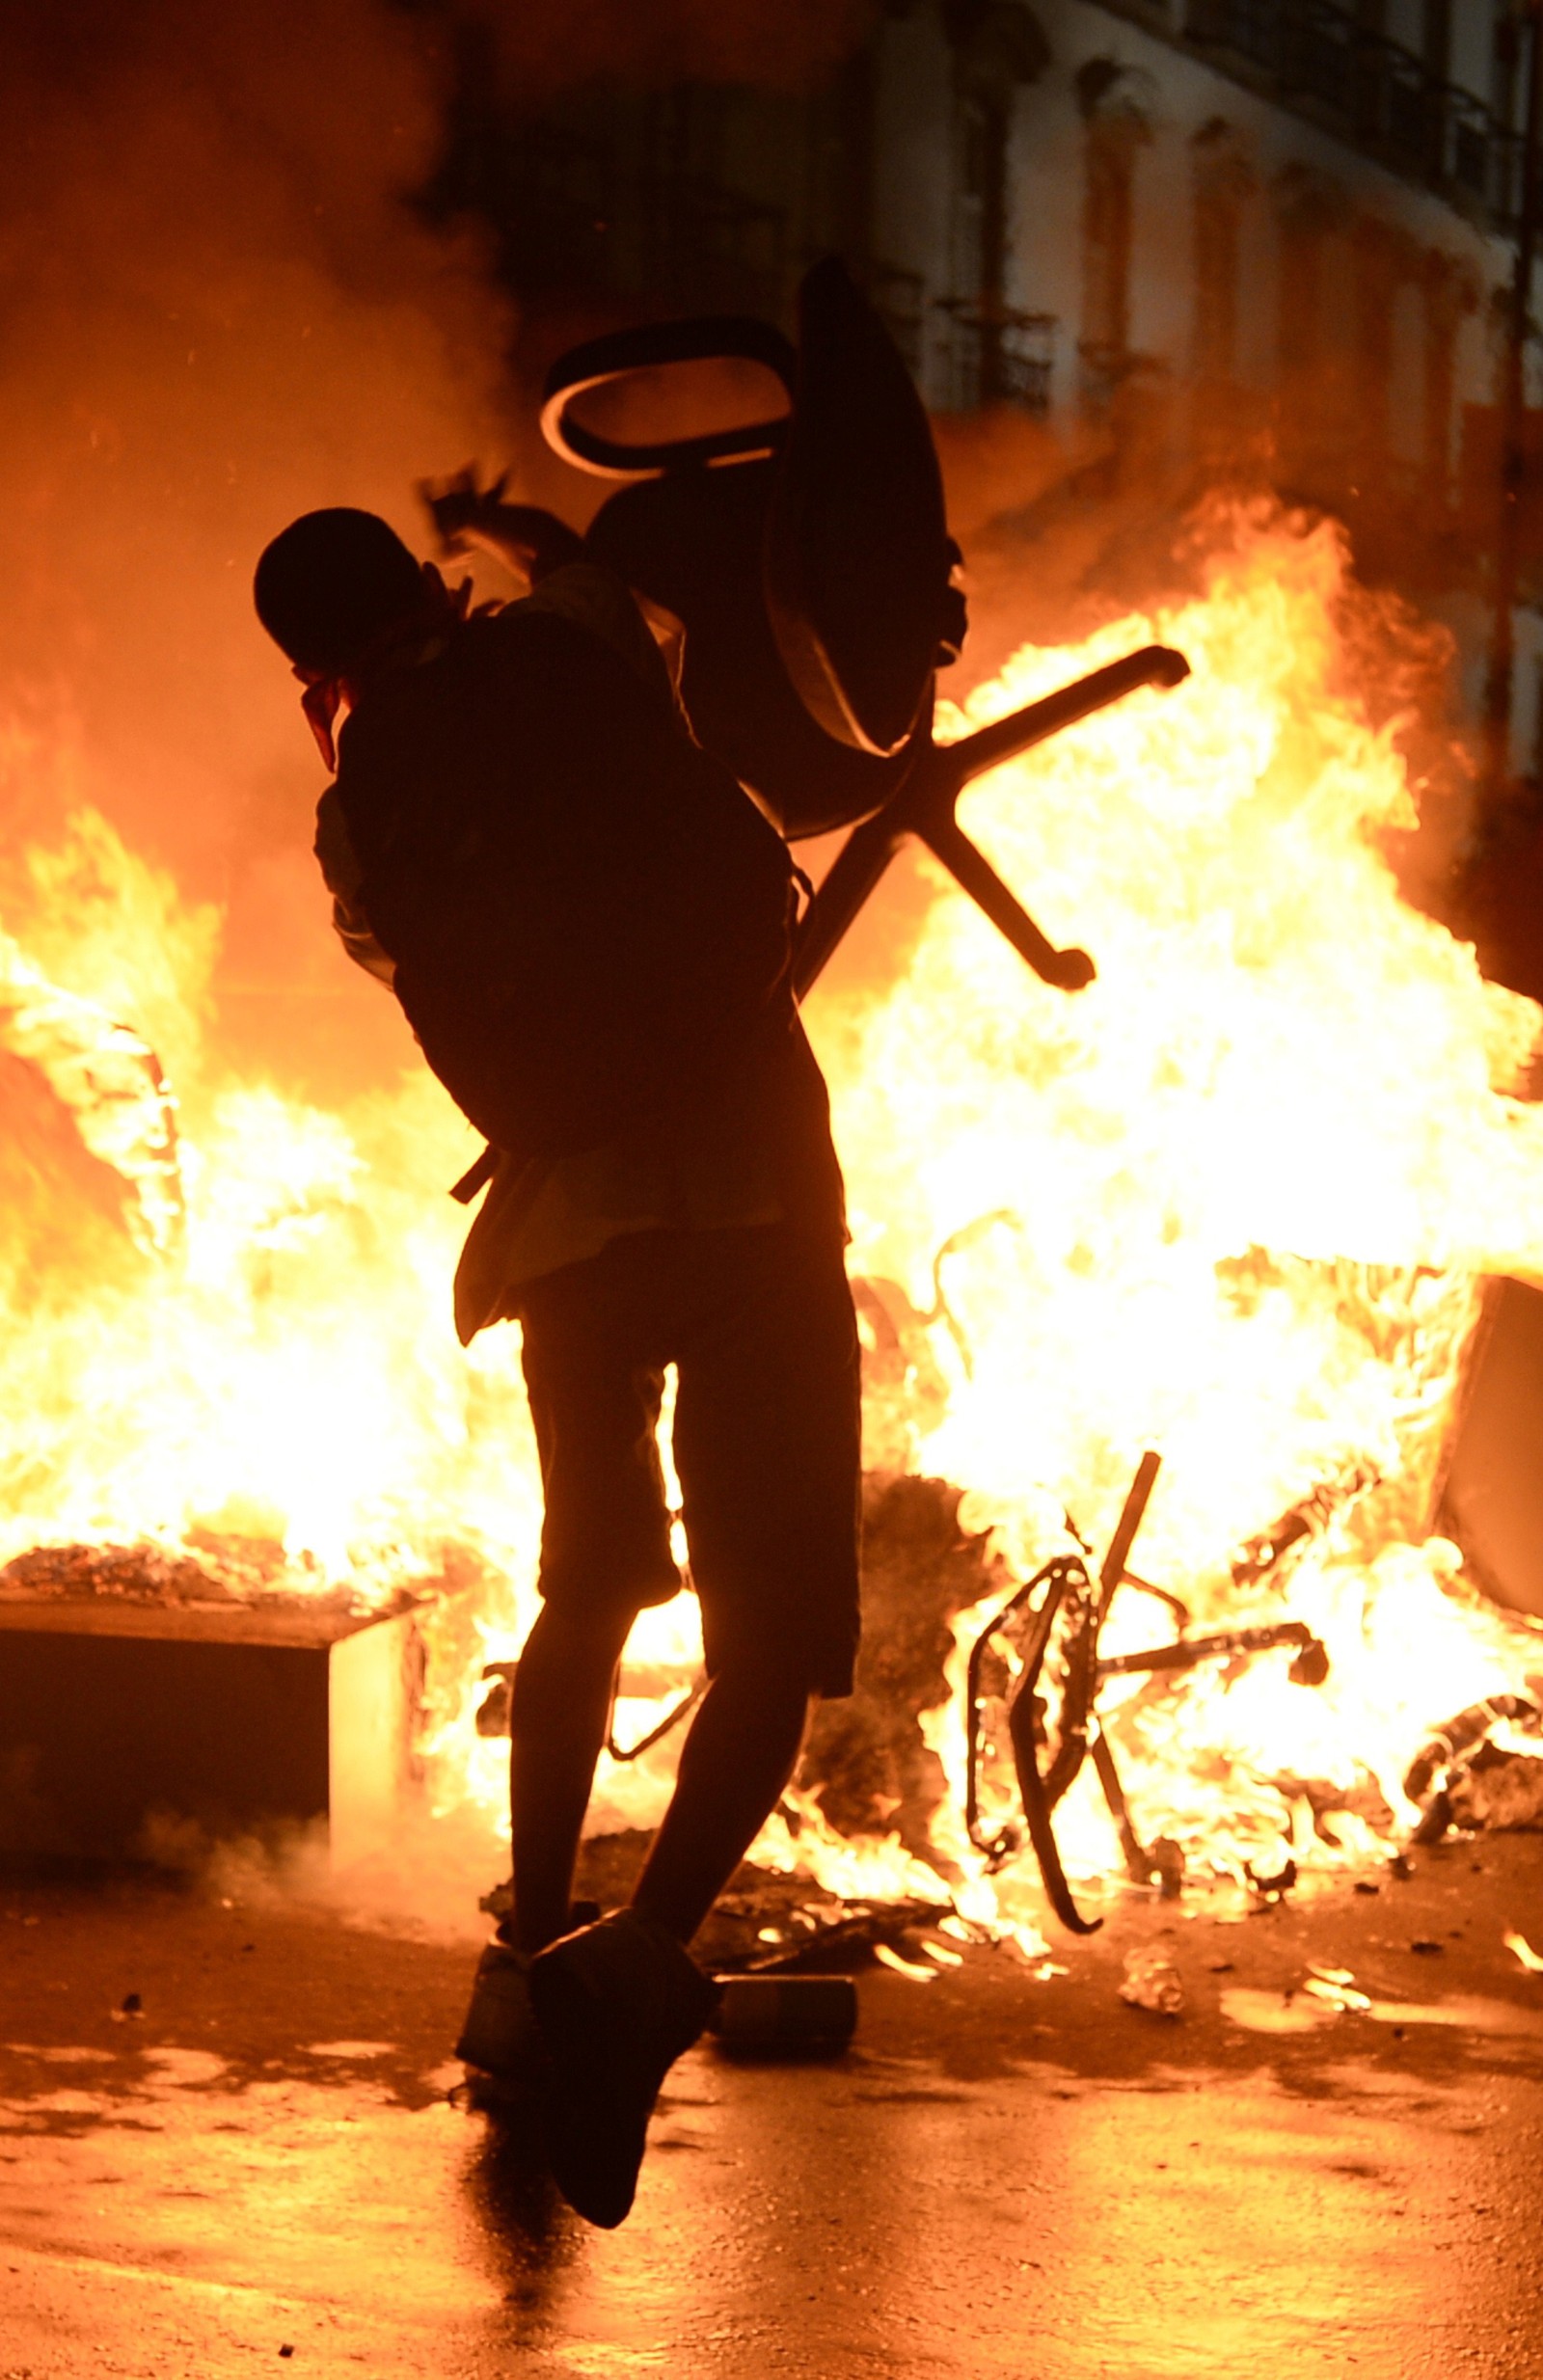 Manifestante radical joga cadeira barricada em chamas durante confronto no centro do Rio de Janeiro, em 17 de junho de 2013.  — Foto: LUIS GENE / AFP